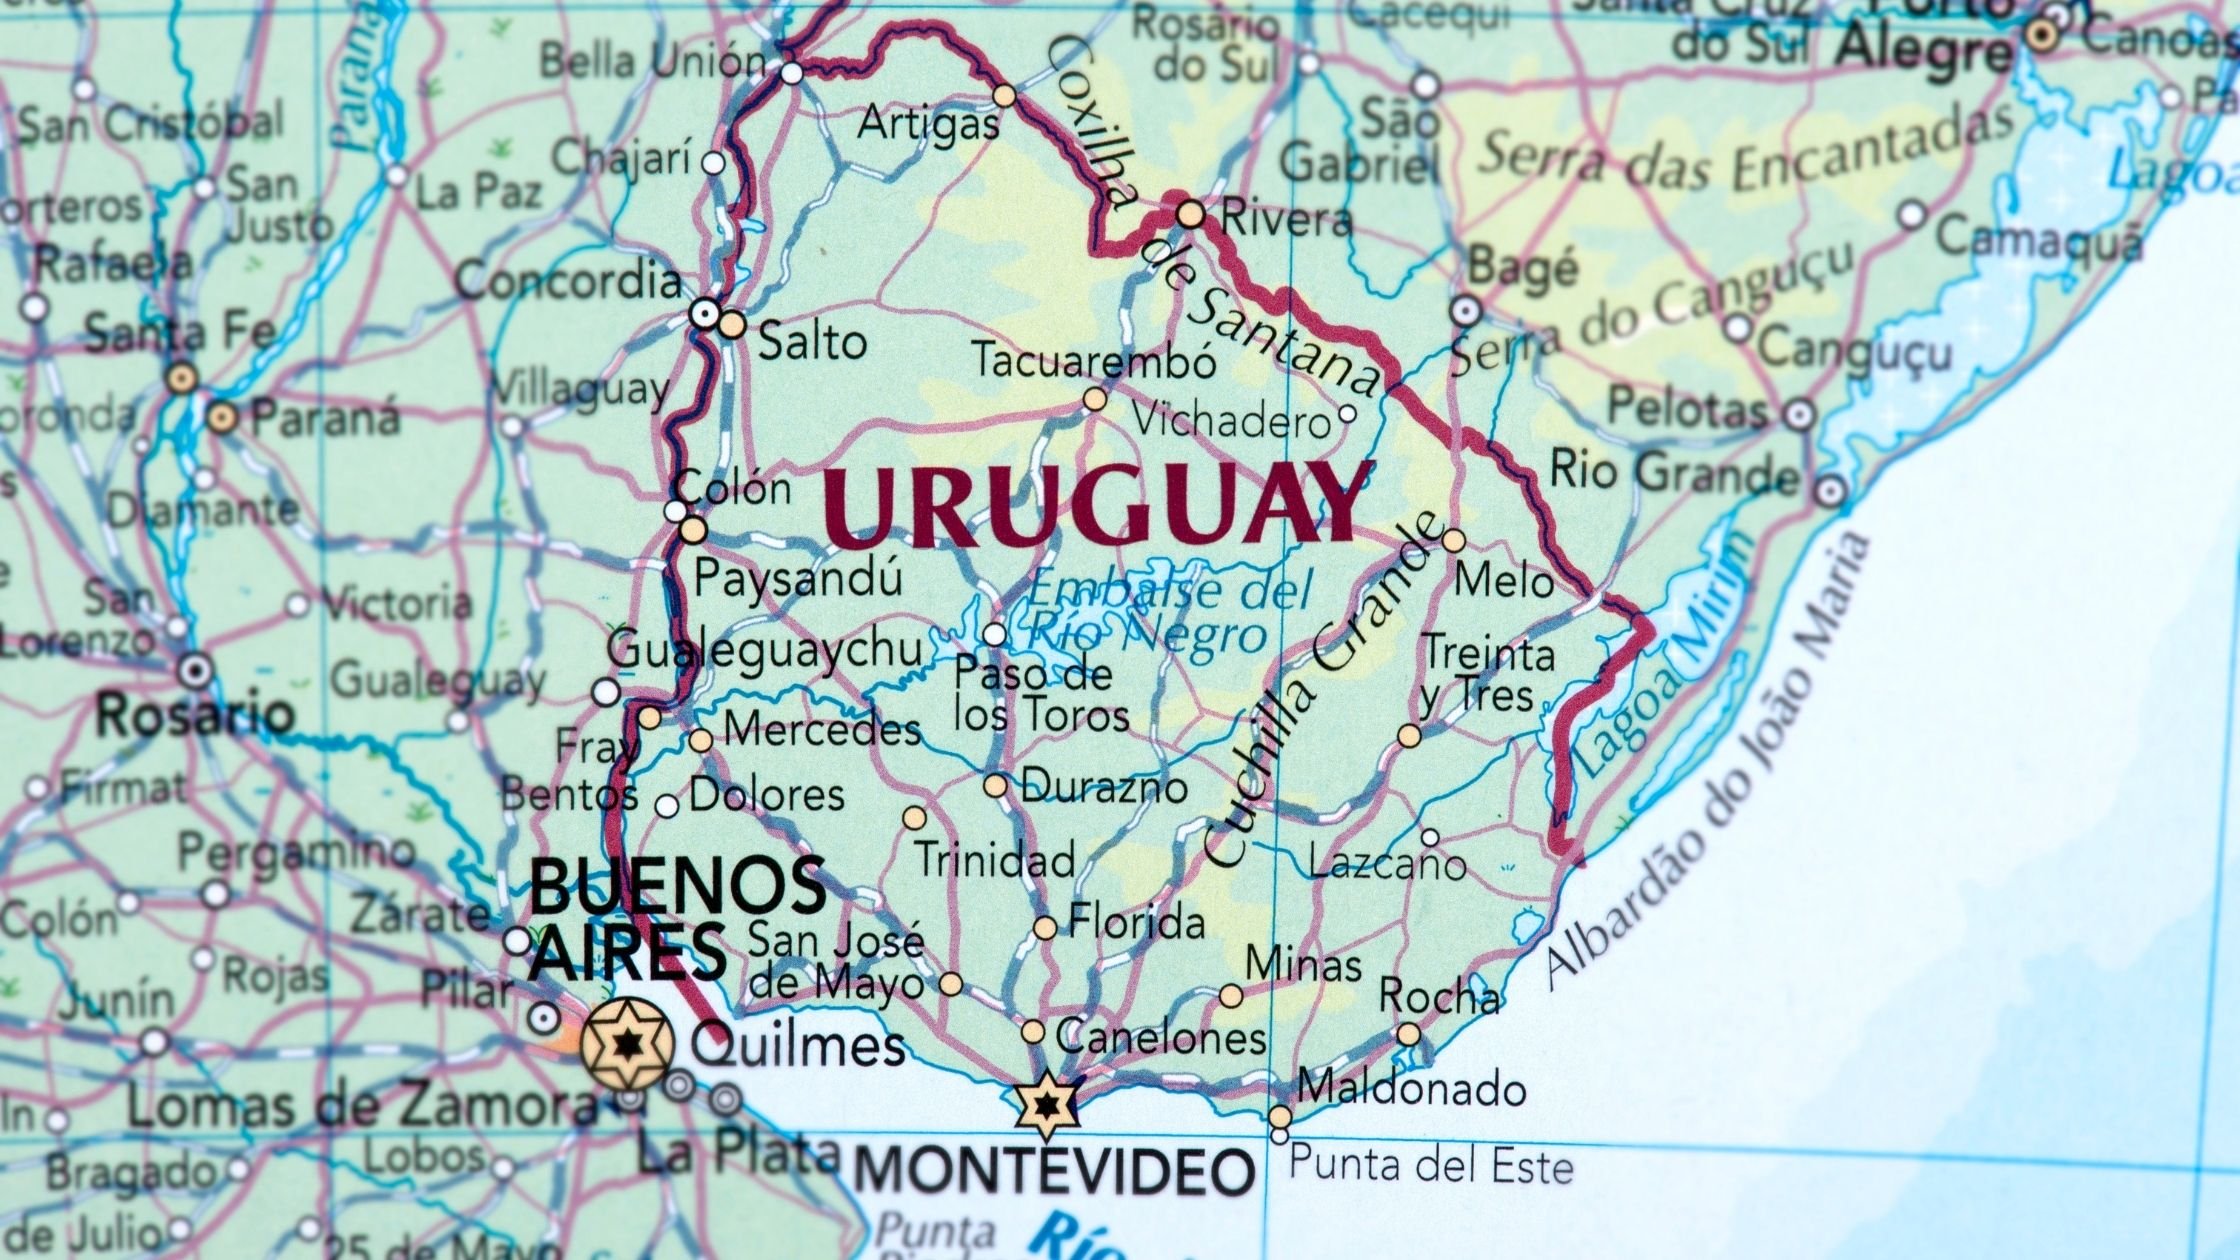 Mapa de Uruguay - La residencia en Uruguay es extraordinariamente atractiva por una variedad de razones. Para los solicitantes extranjeros, el país ofrece un proceso de trámites relativamente sencillo y eficiente para obtener el permiso de residencia, lo que les permite establecerse con facilidad. Las condiciones de vida son excelentes, con una cultura acogedora y una educación de calidad que atraen a muchas familias extranjeras. Además, el país ofrece una vivienda asequible en comparación con otros destinos, y las costumbres y la cultura locales crean un ambiente vibrante y enriquecedor para aquellos que deciden establecer su domicilio aquí.